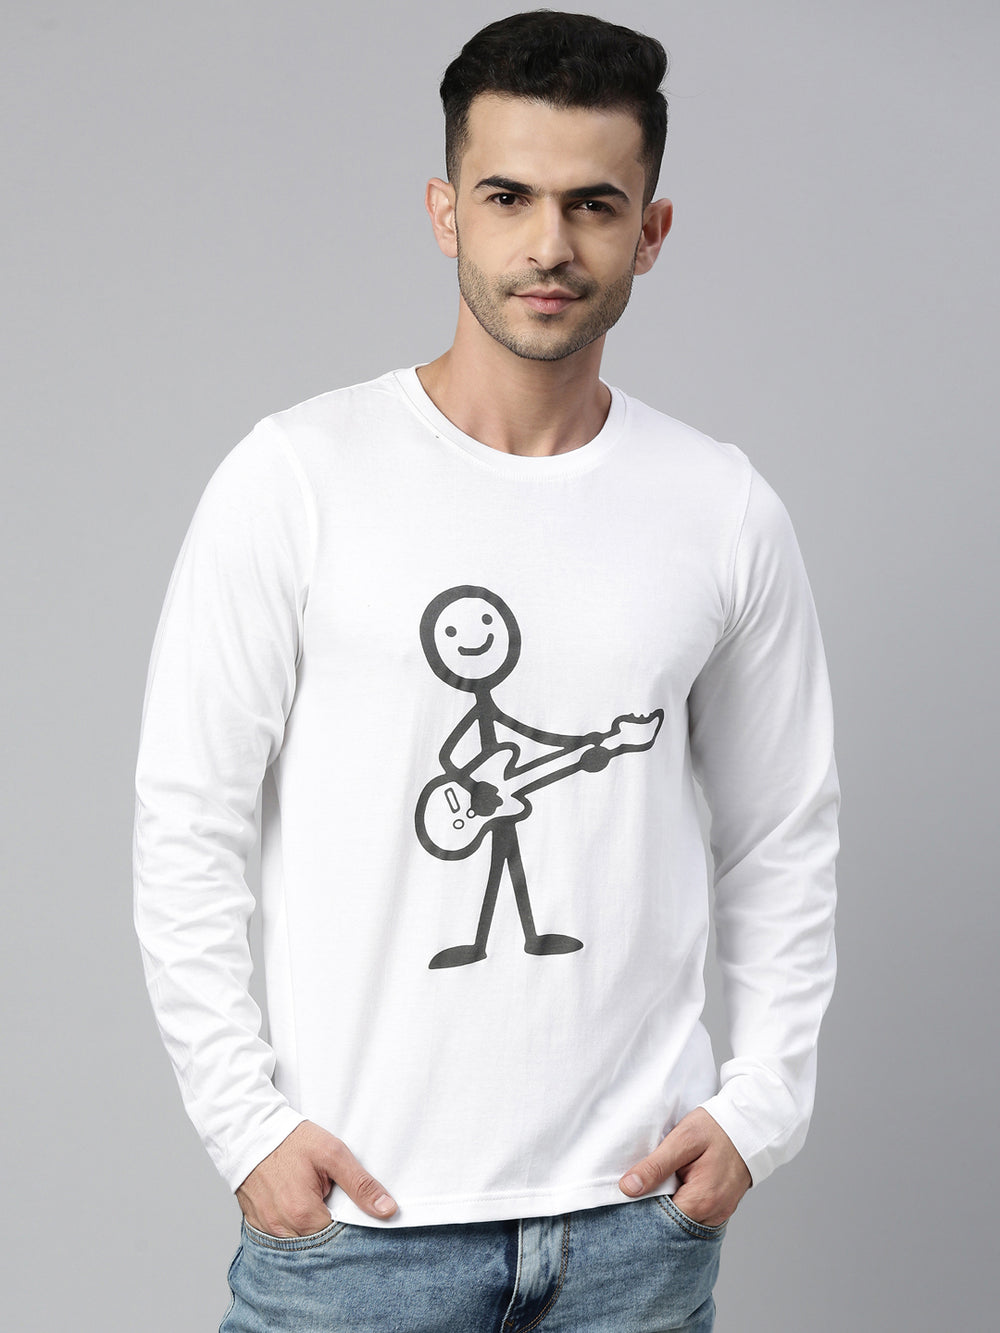 Guitar Boy White Full Sleeves T Shirt Full Sleeves Bushirt   